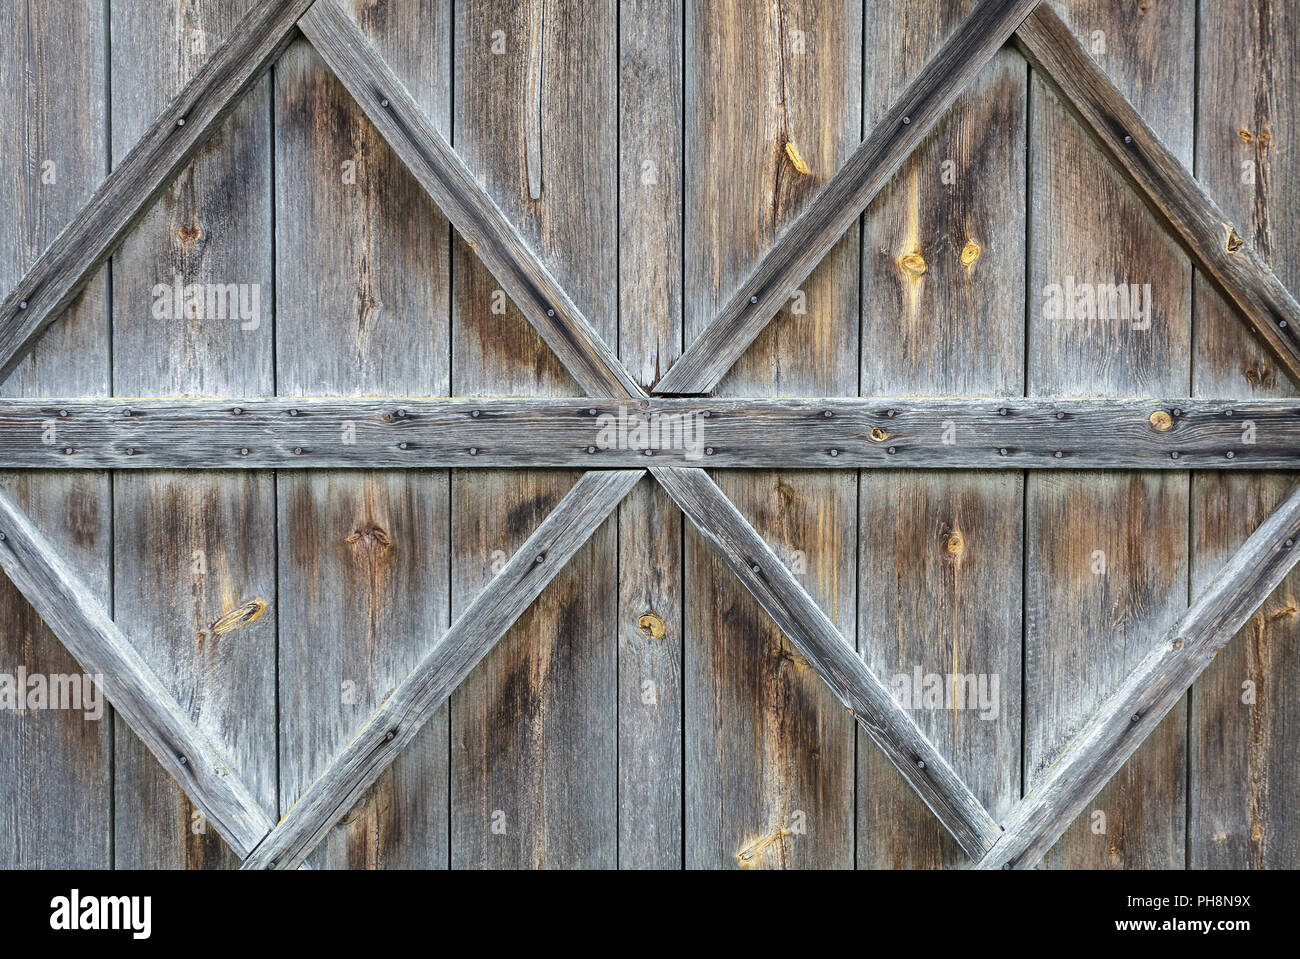 Old wooden door background Stock Photo